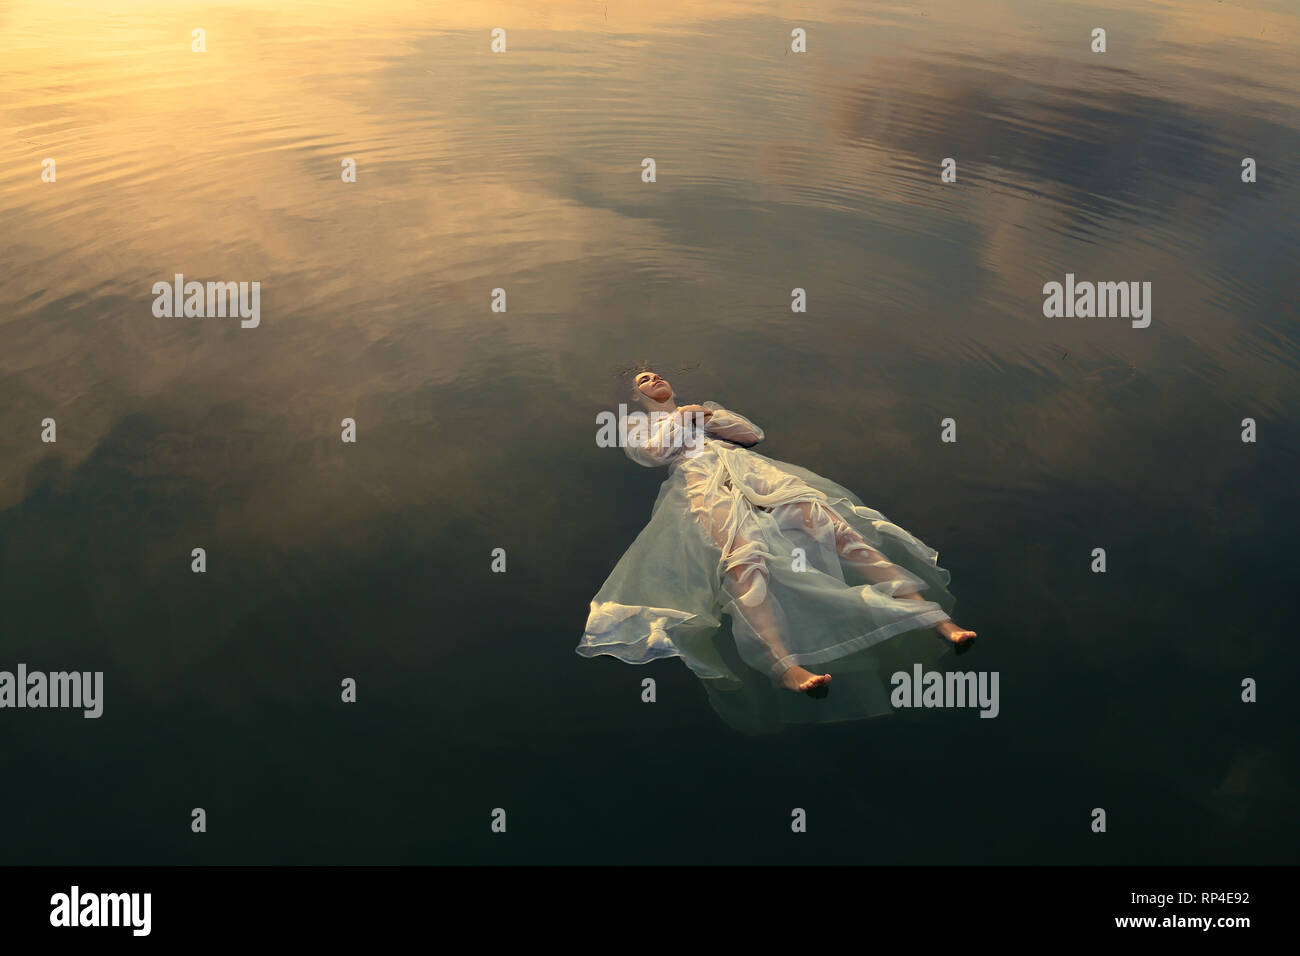 Ofelia morti nelle acque del lago al tramonto Foto Stock